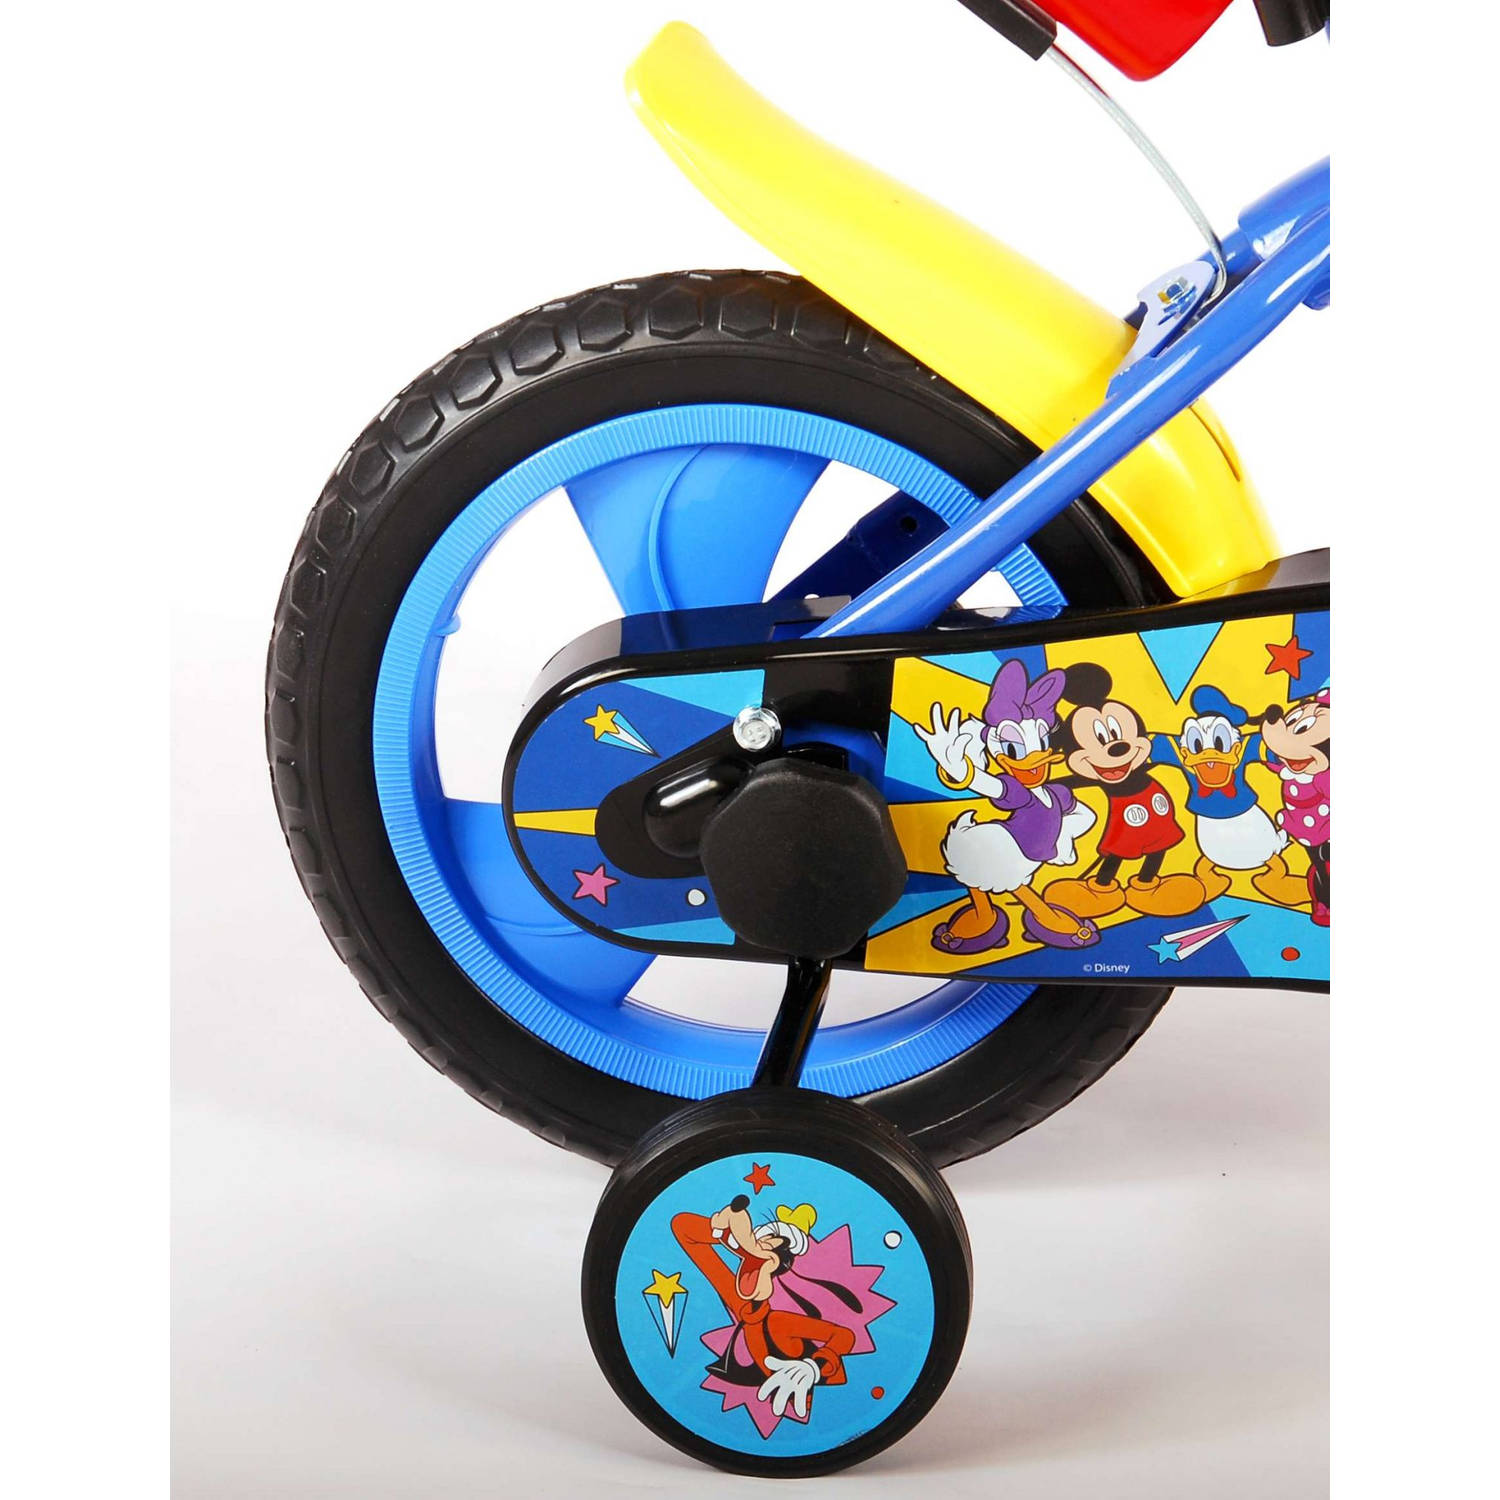 heel veel riem gek geworden Volare Kinderfiets Mickey Mouse - 12 inch - Doortrapper - Met bidonhouder -  Inclusief fietshelm & accessoires | Blokker